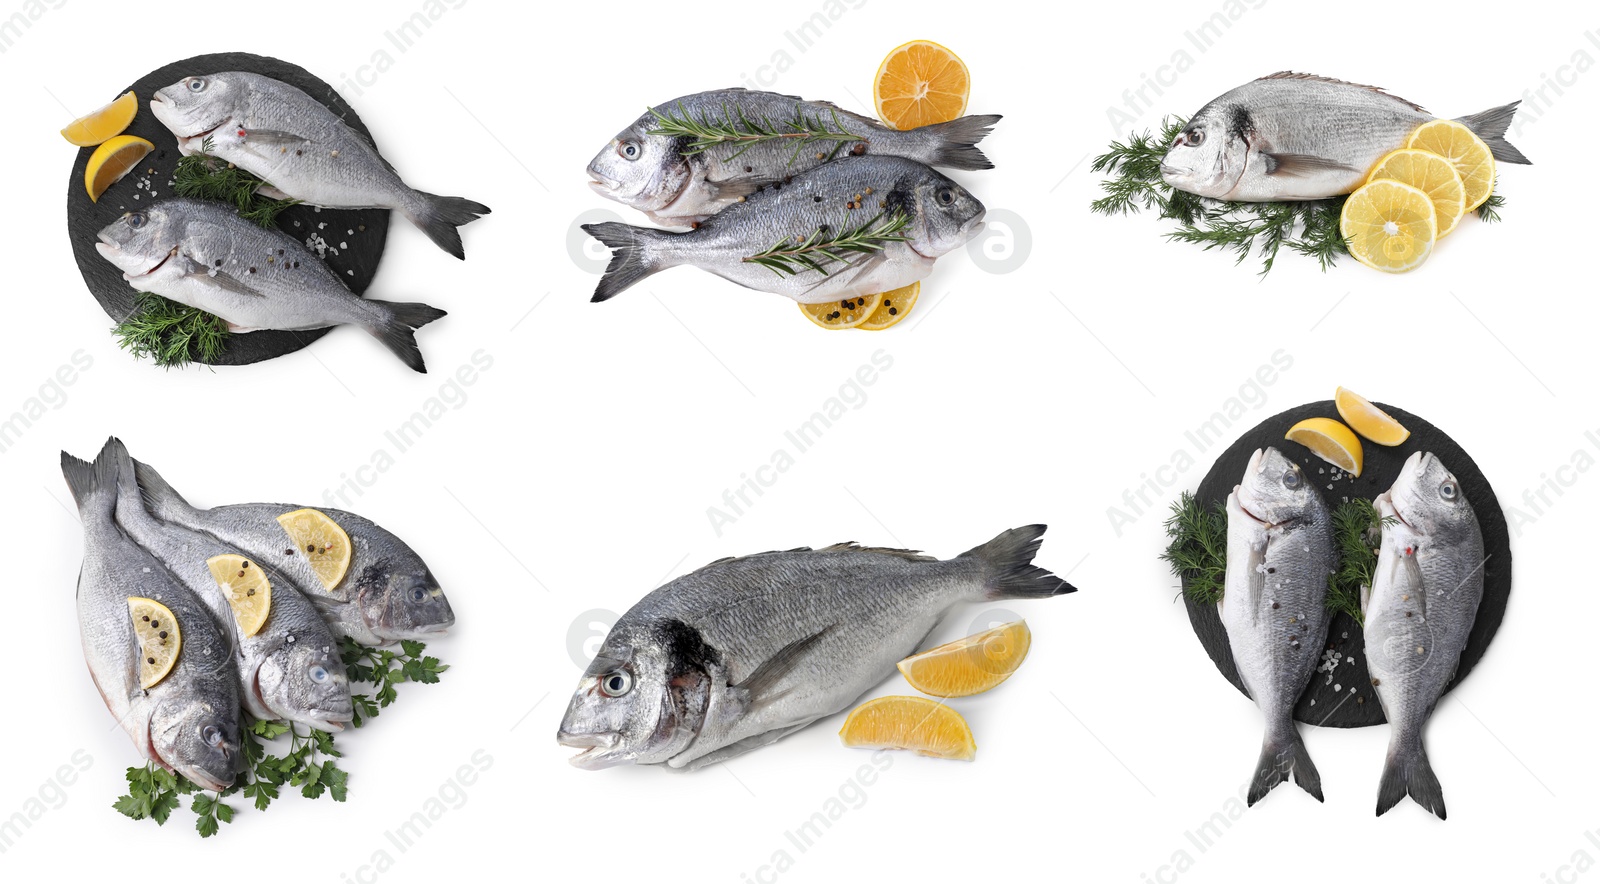 Image of Raw dorada fish isolated, lemon and spices on white, set